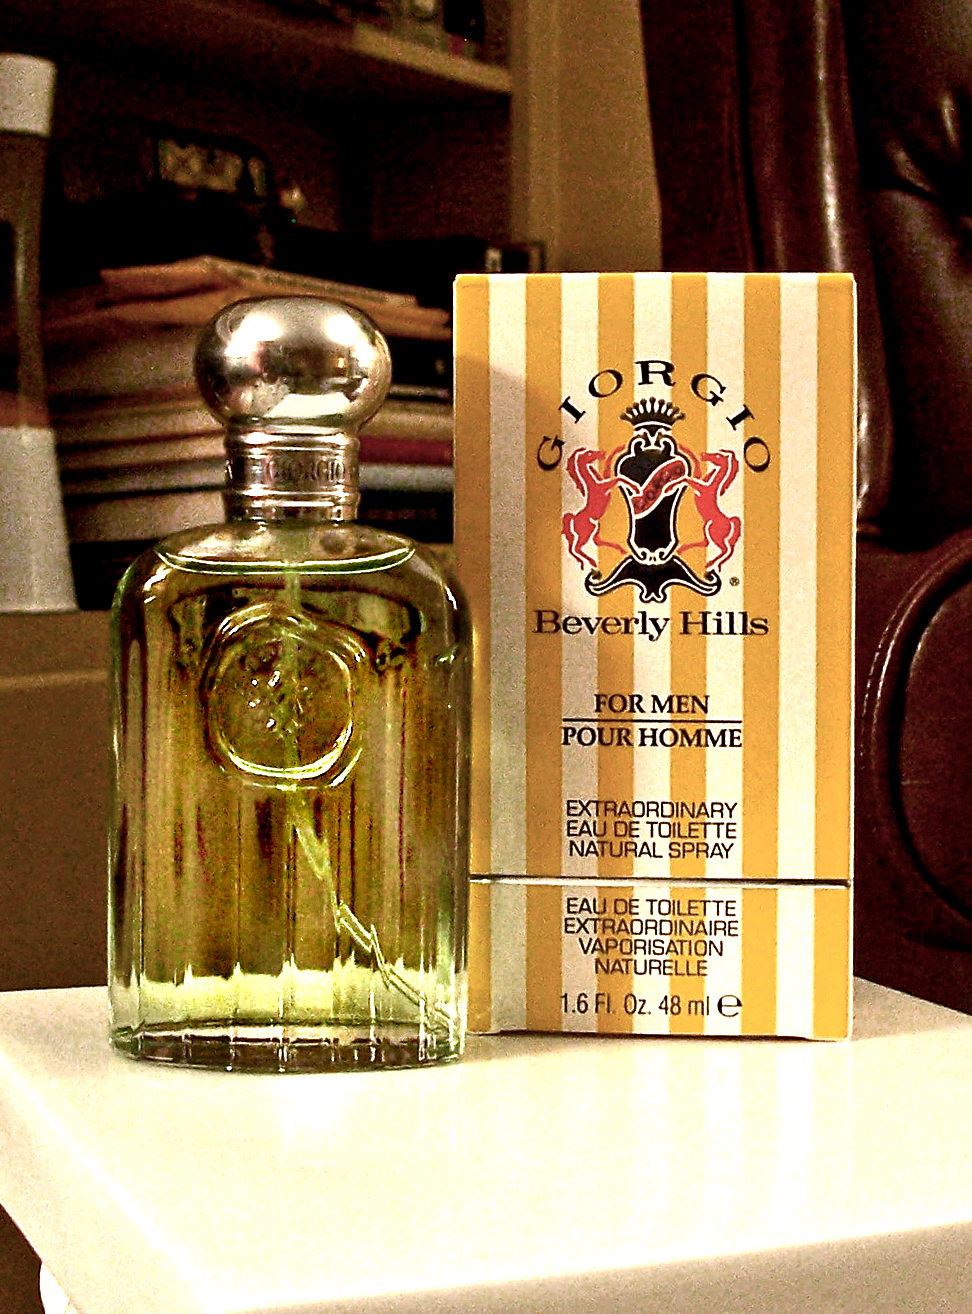 giorgio beverly hills men's fragrance